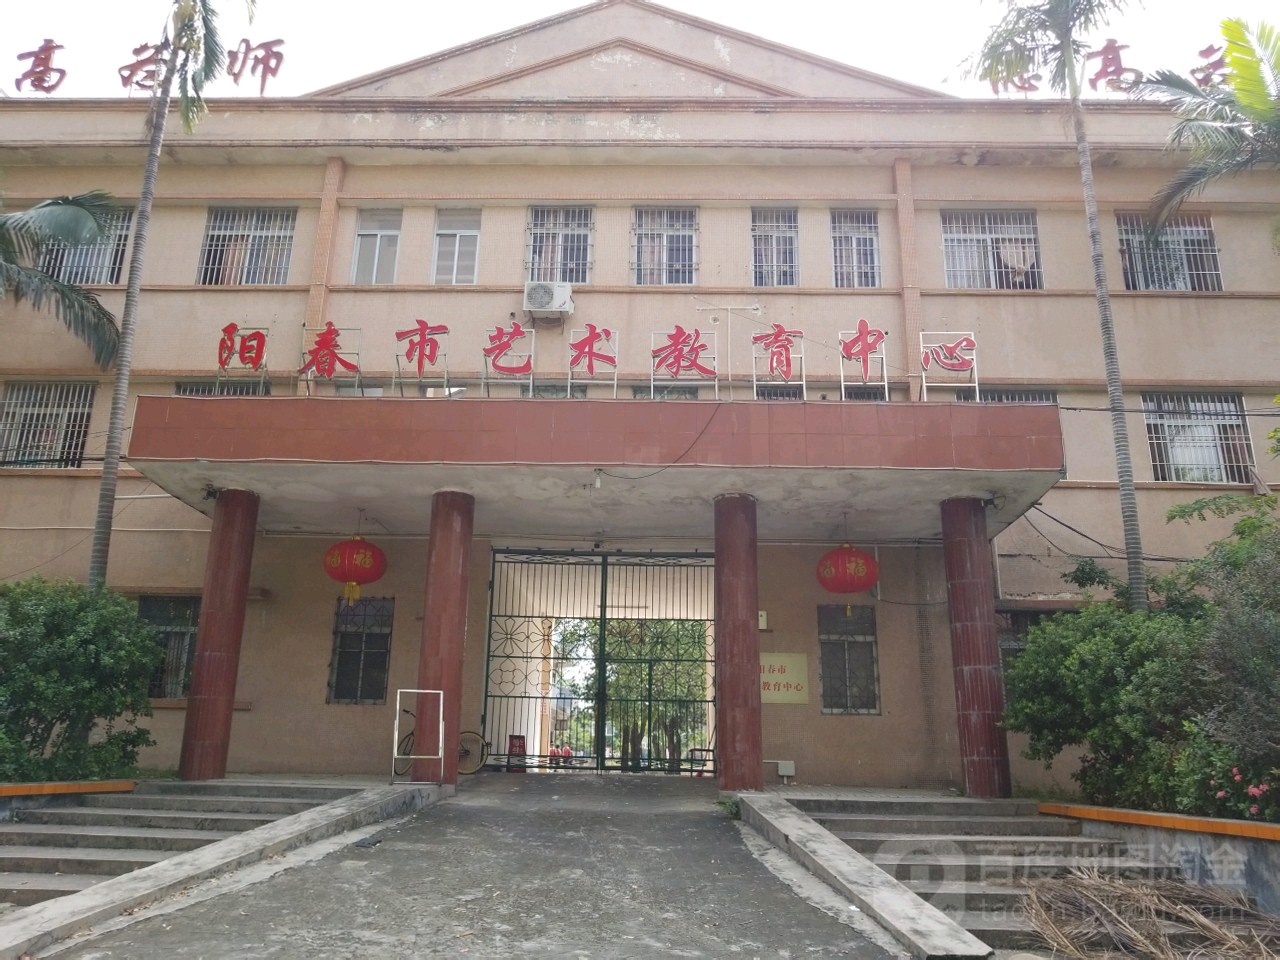 阳春市艺术教育中心